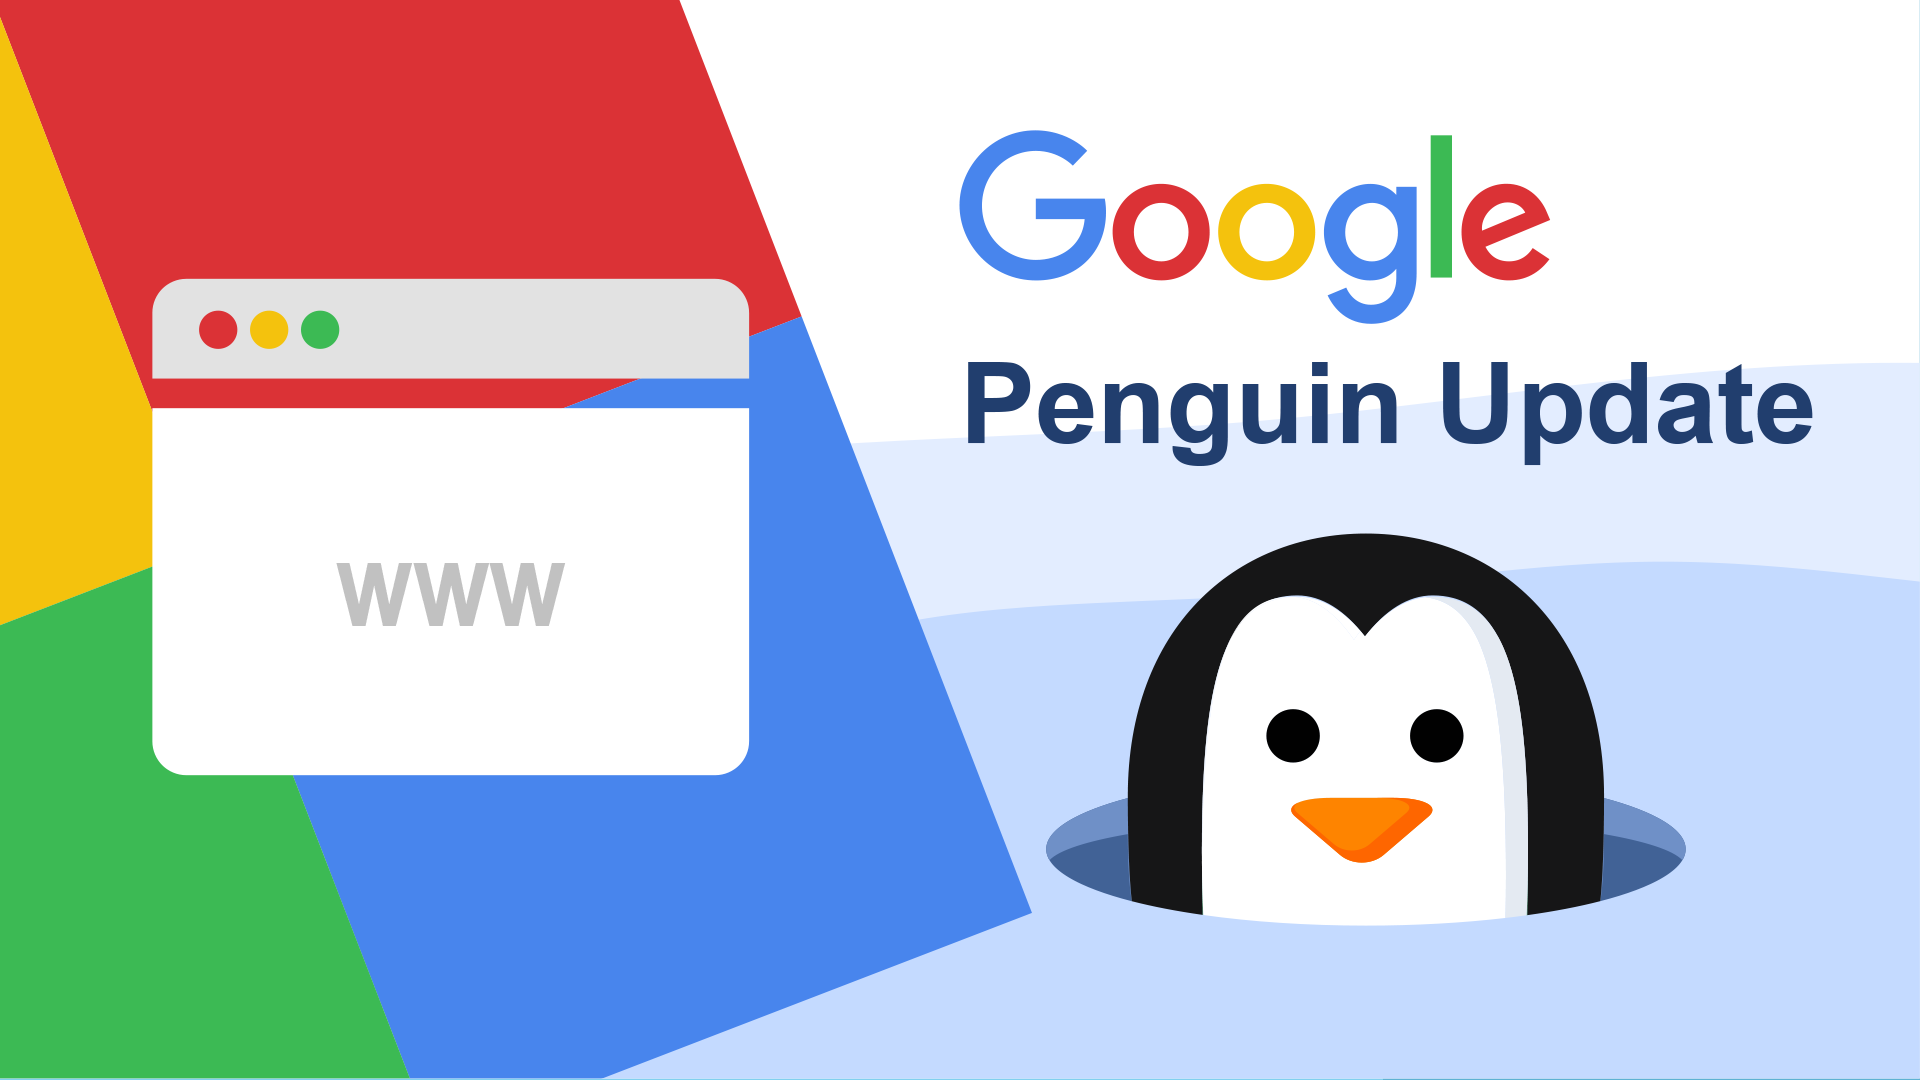 Thuật toán Google Penguin là gì? Các khắc phục khi bị phạt